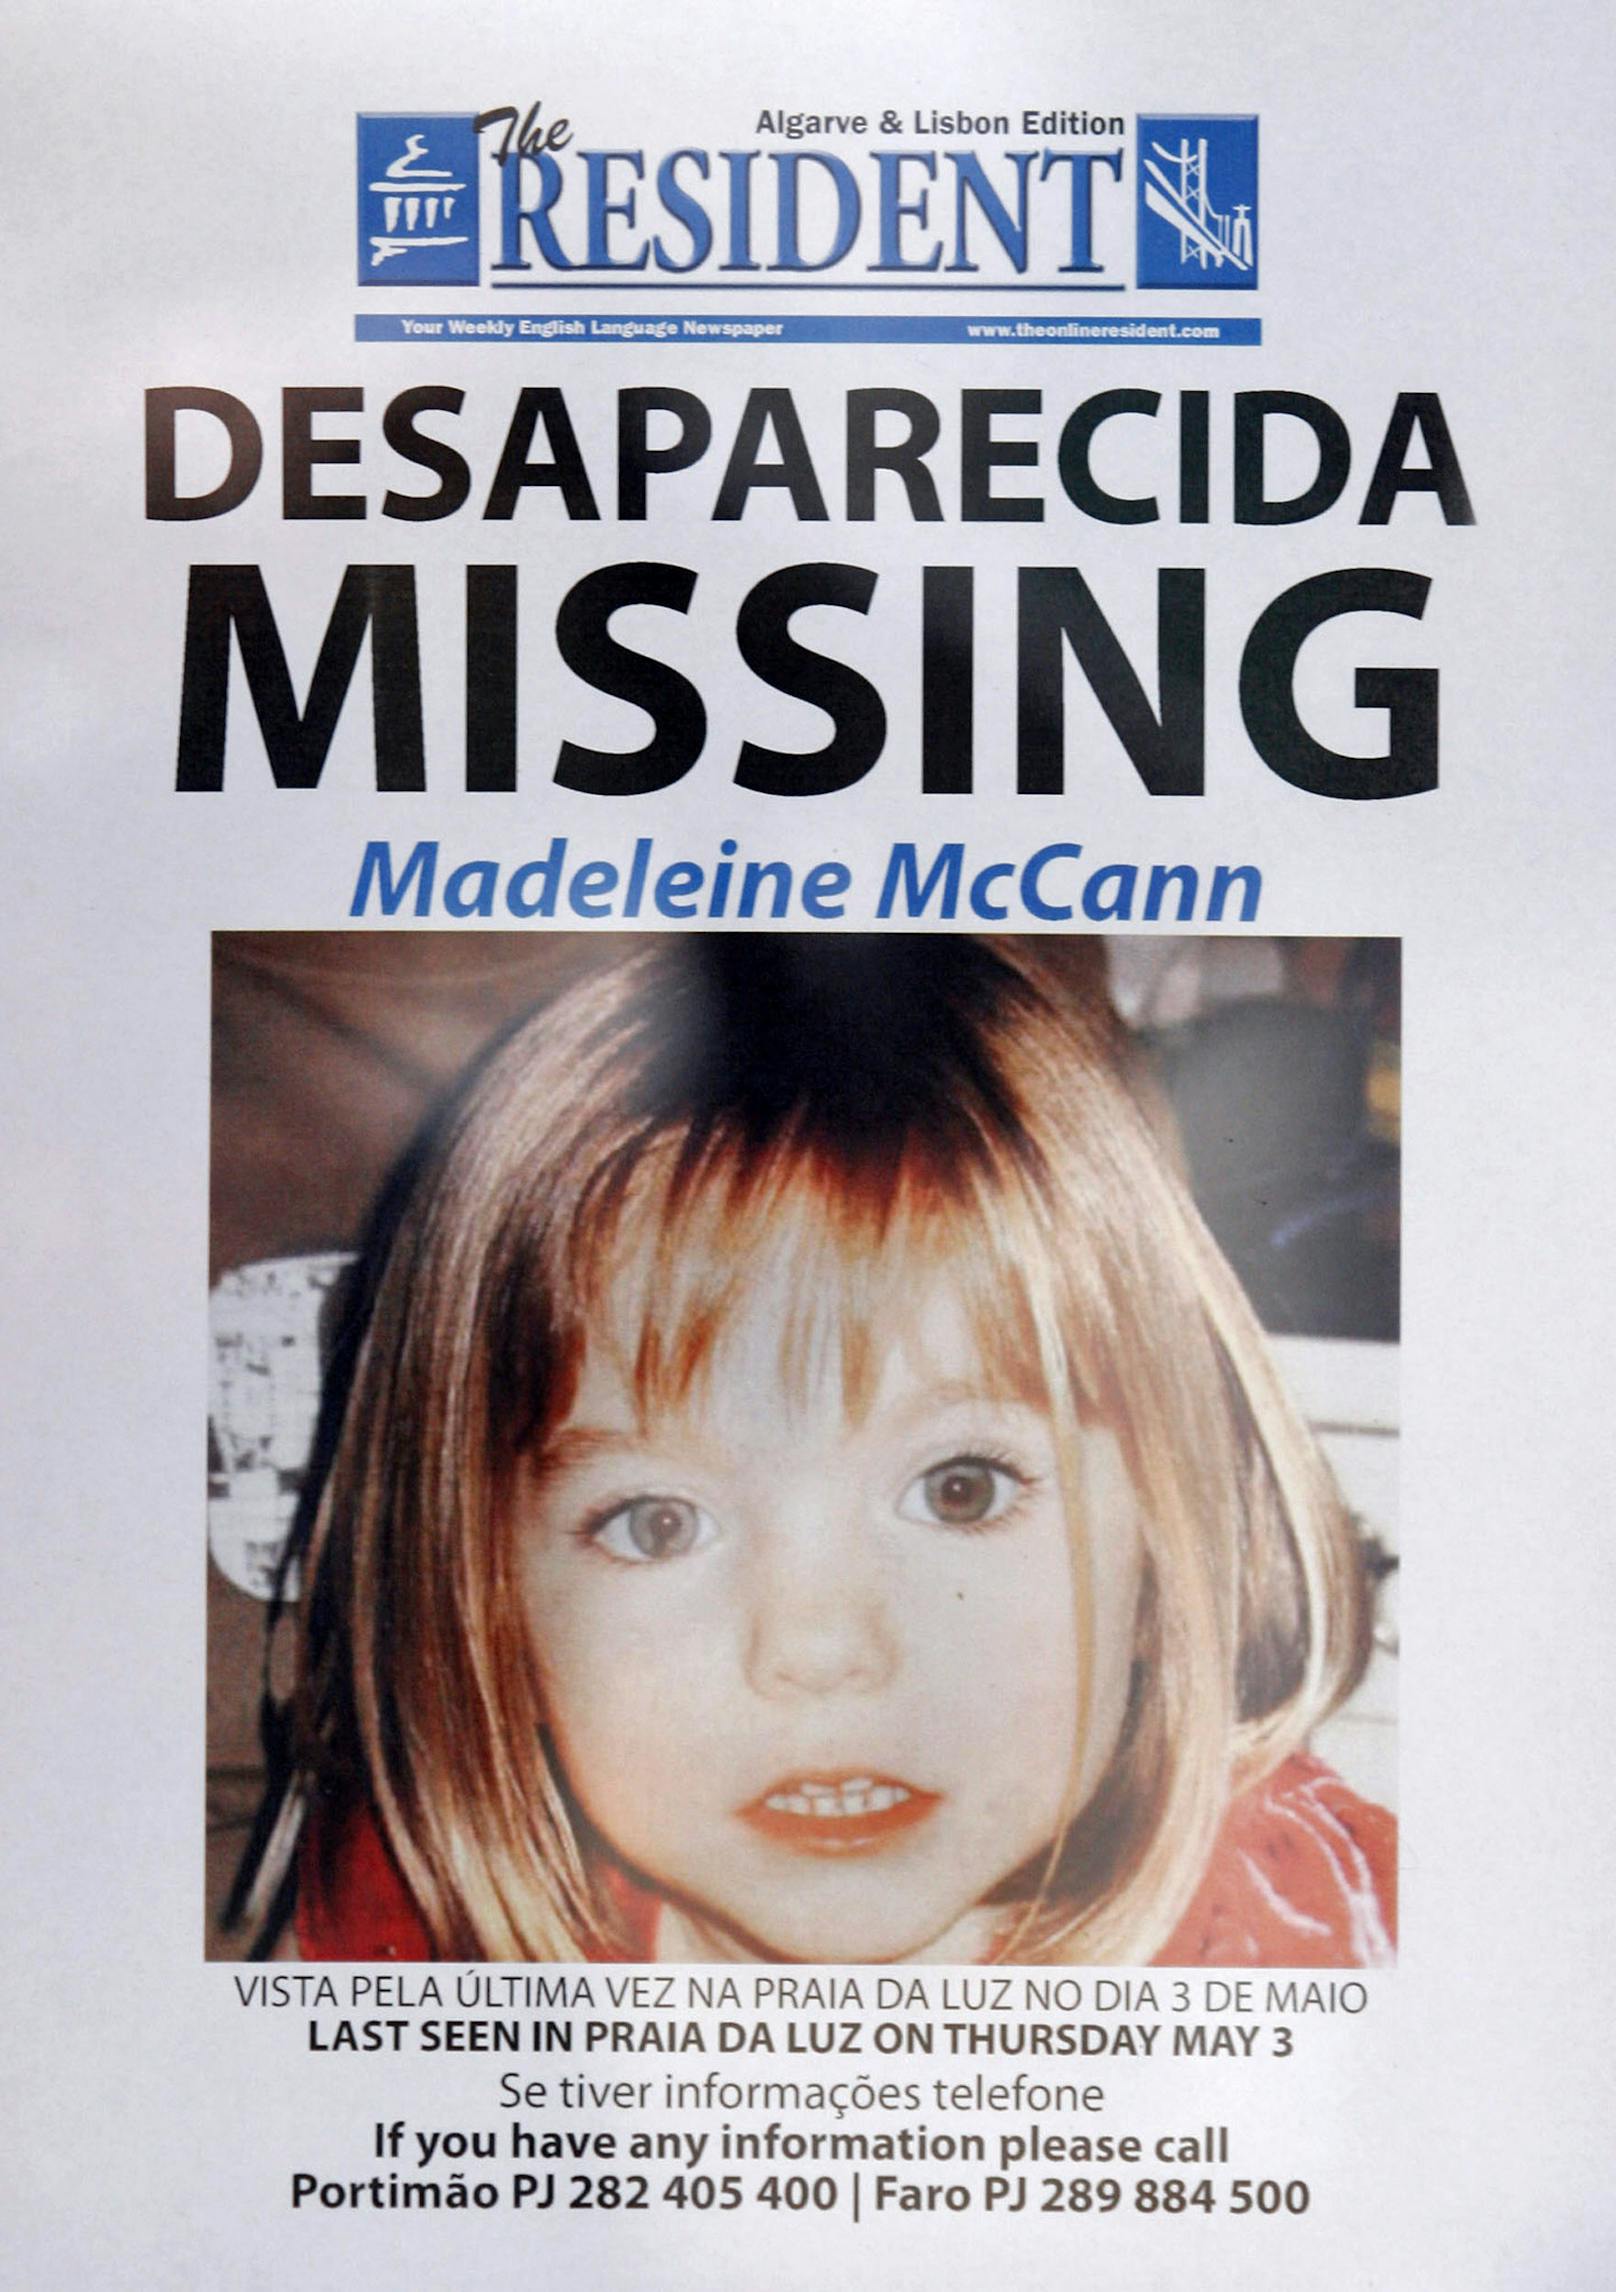 Wurde die seit 13 Jahren vermisste Maddie McCann von einem 43-jährigen deutschen Staatangehörigen umgebracht?